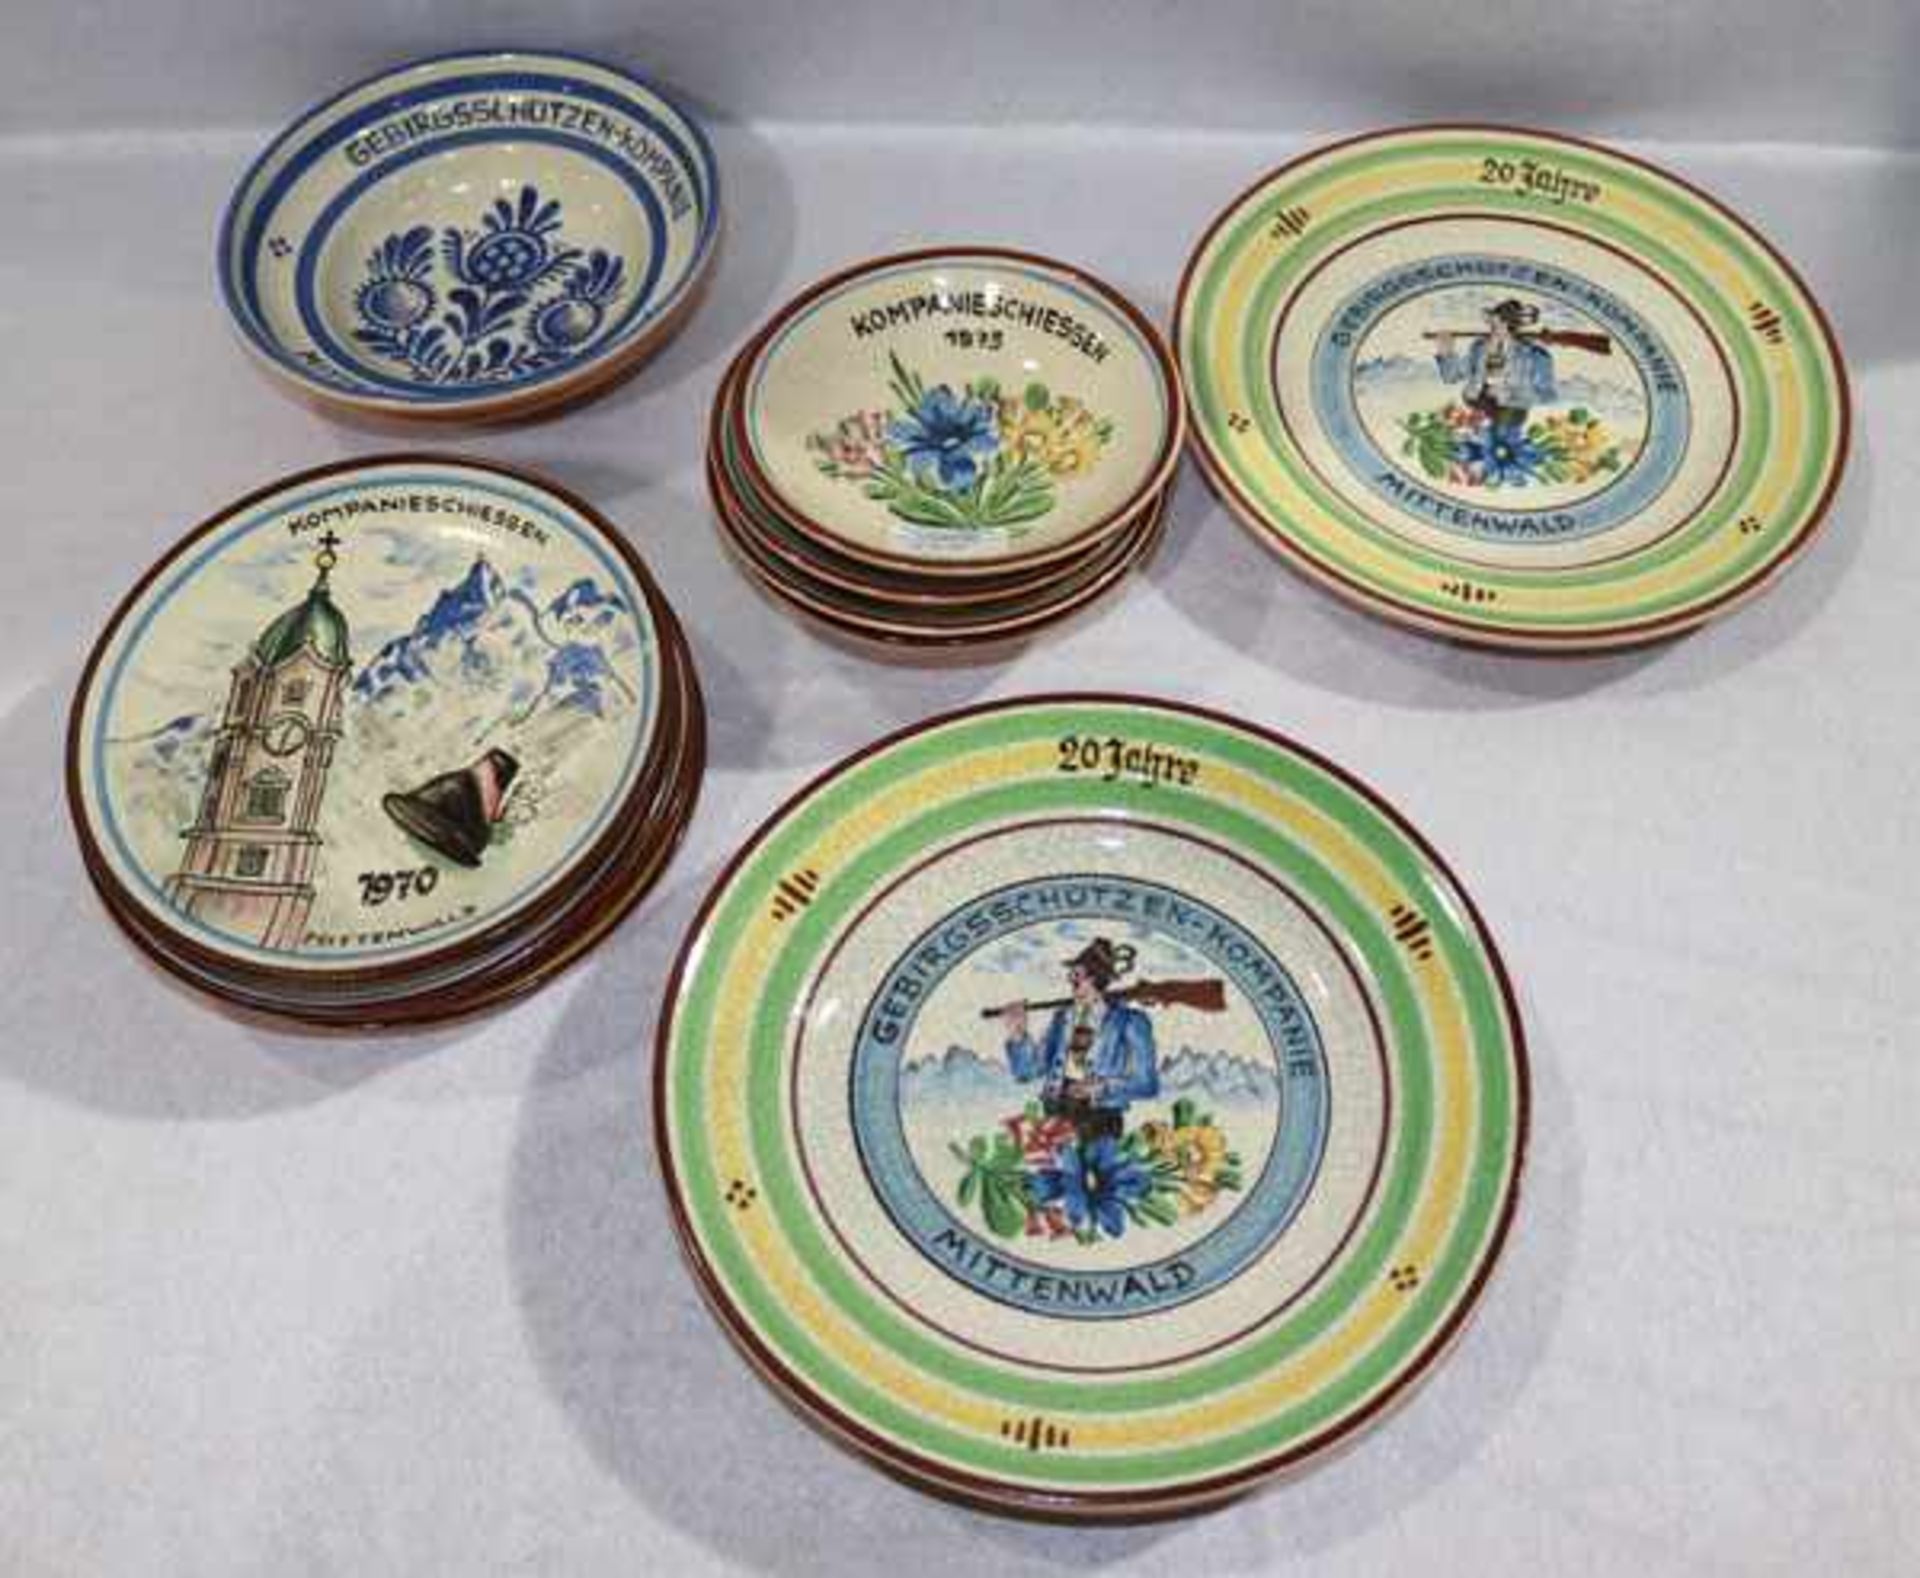 Konvolut von Kagel Keramik Teller und Schalen, meist Preise vom Kompanieschiessen, verschiedene